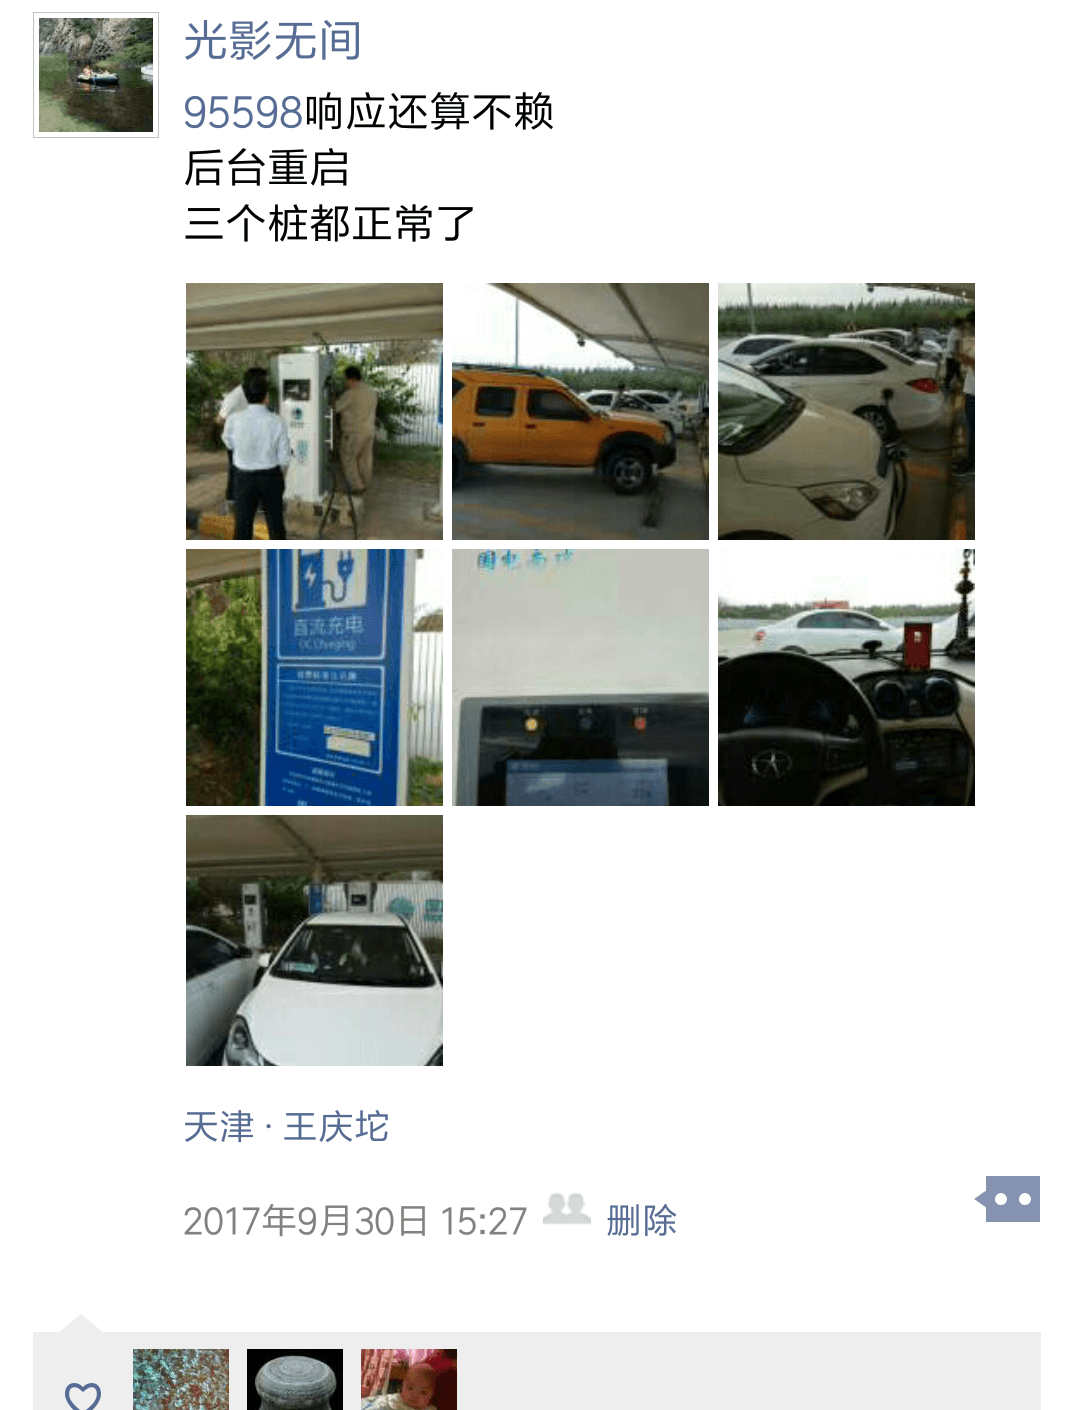 Screenshot_2017-10-22-17-34-06-288_com.tencent.mm.png